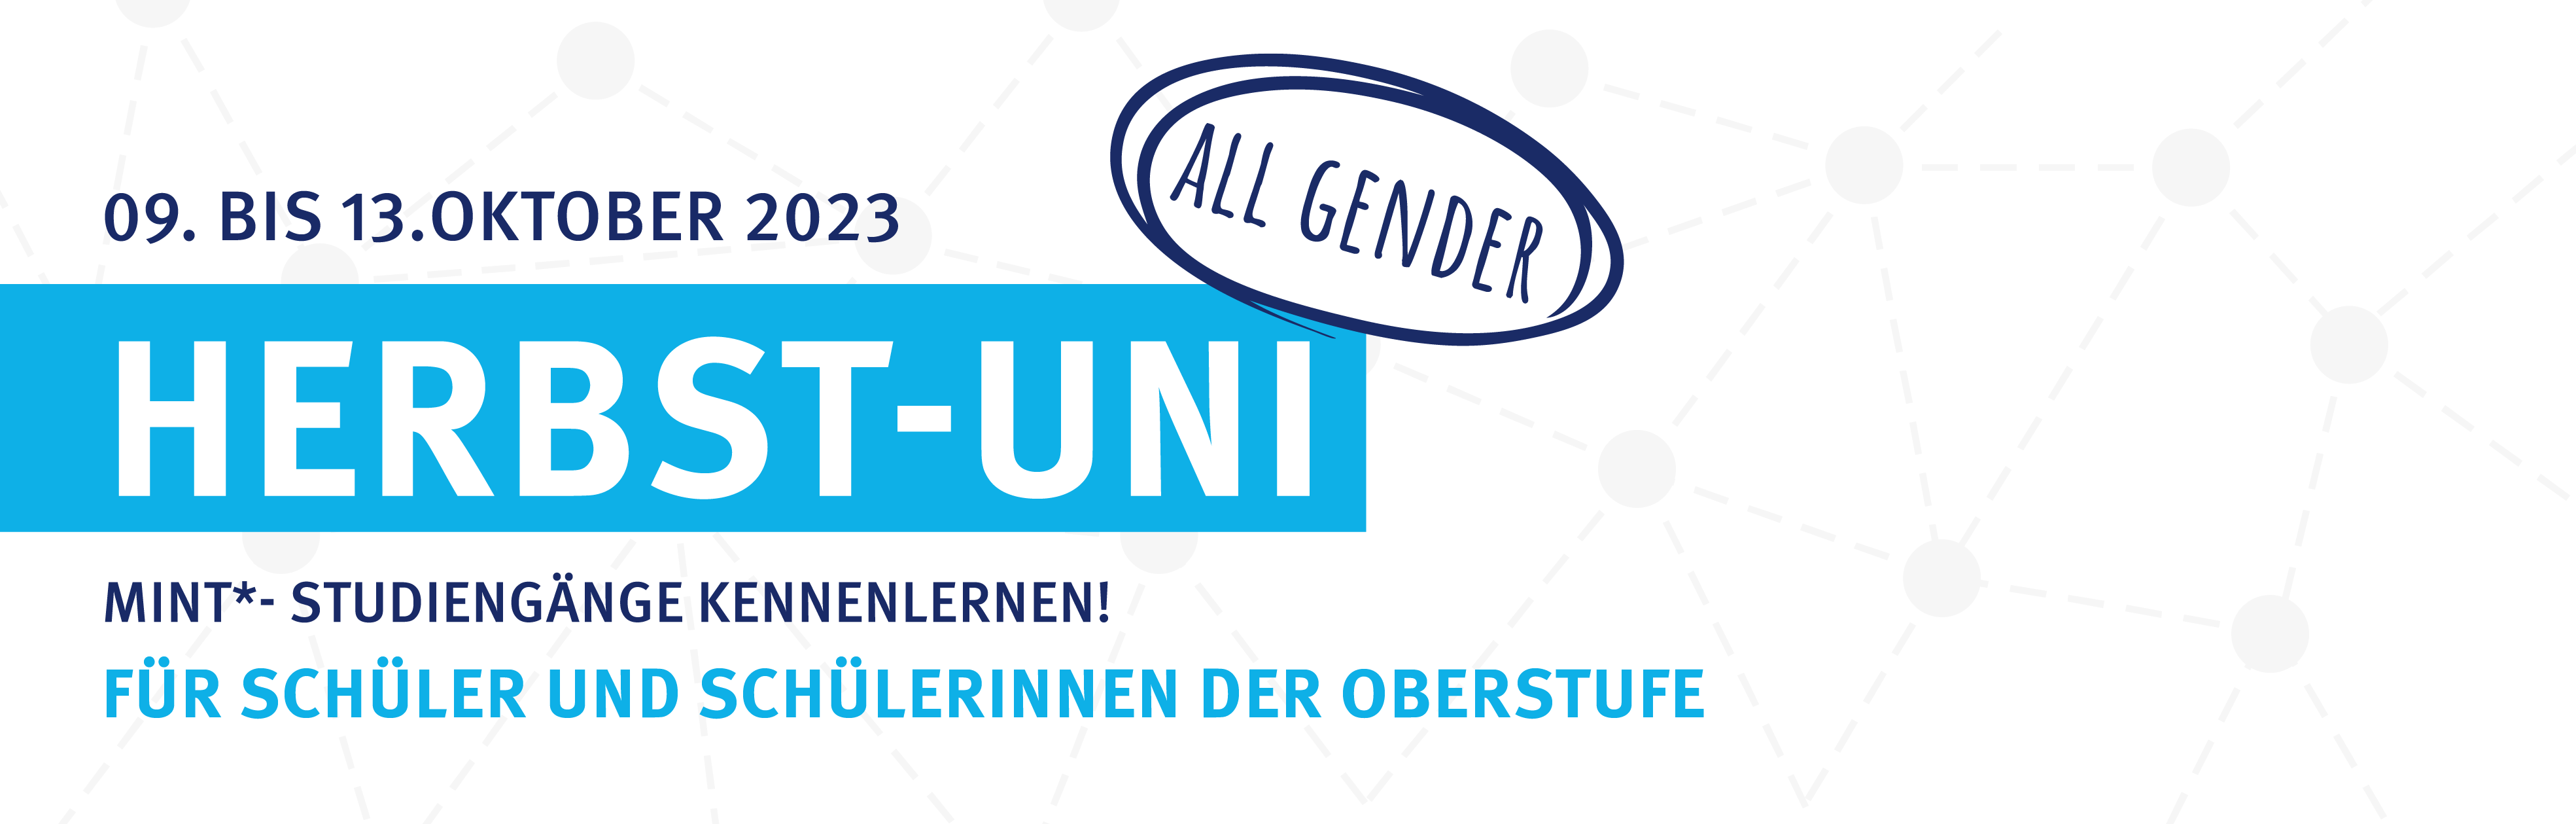 Anmeldung Herbst-Uni "all gender" 2023